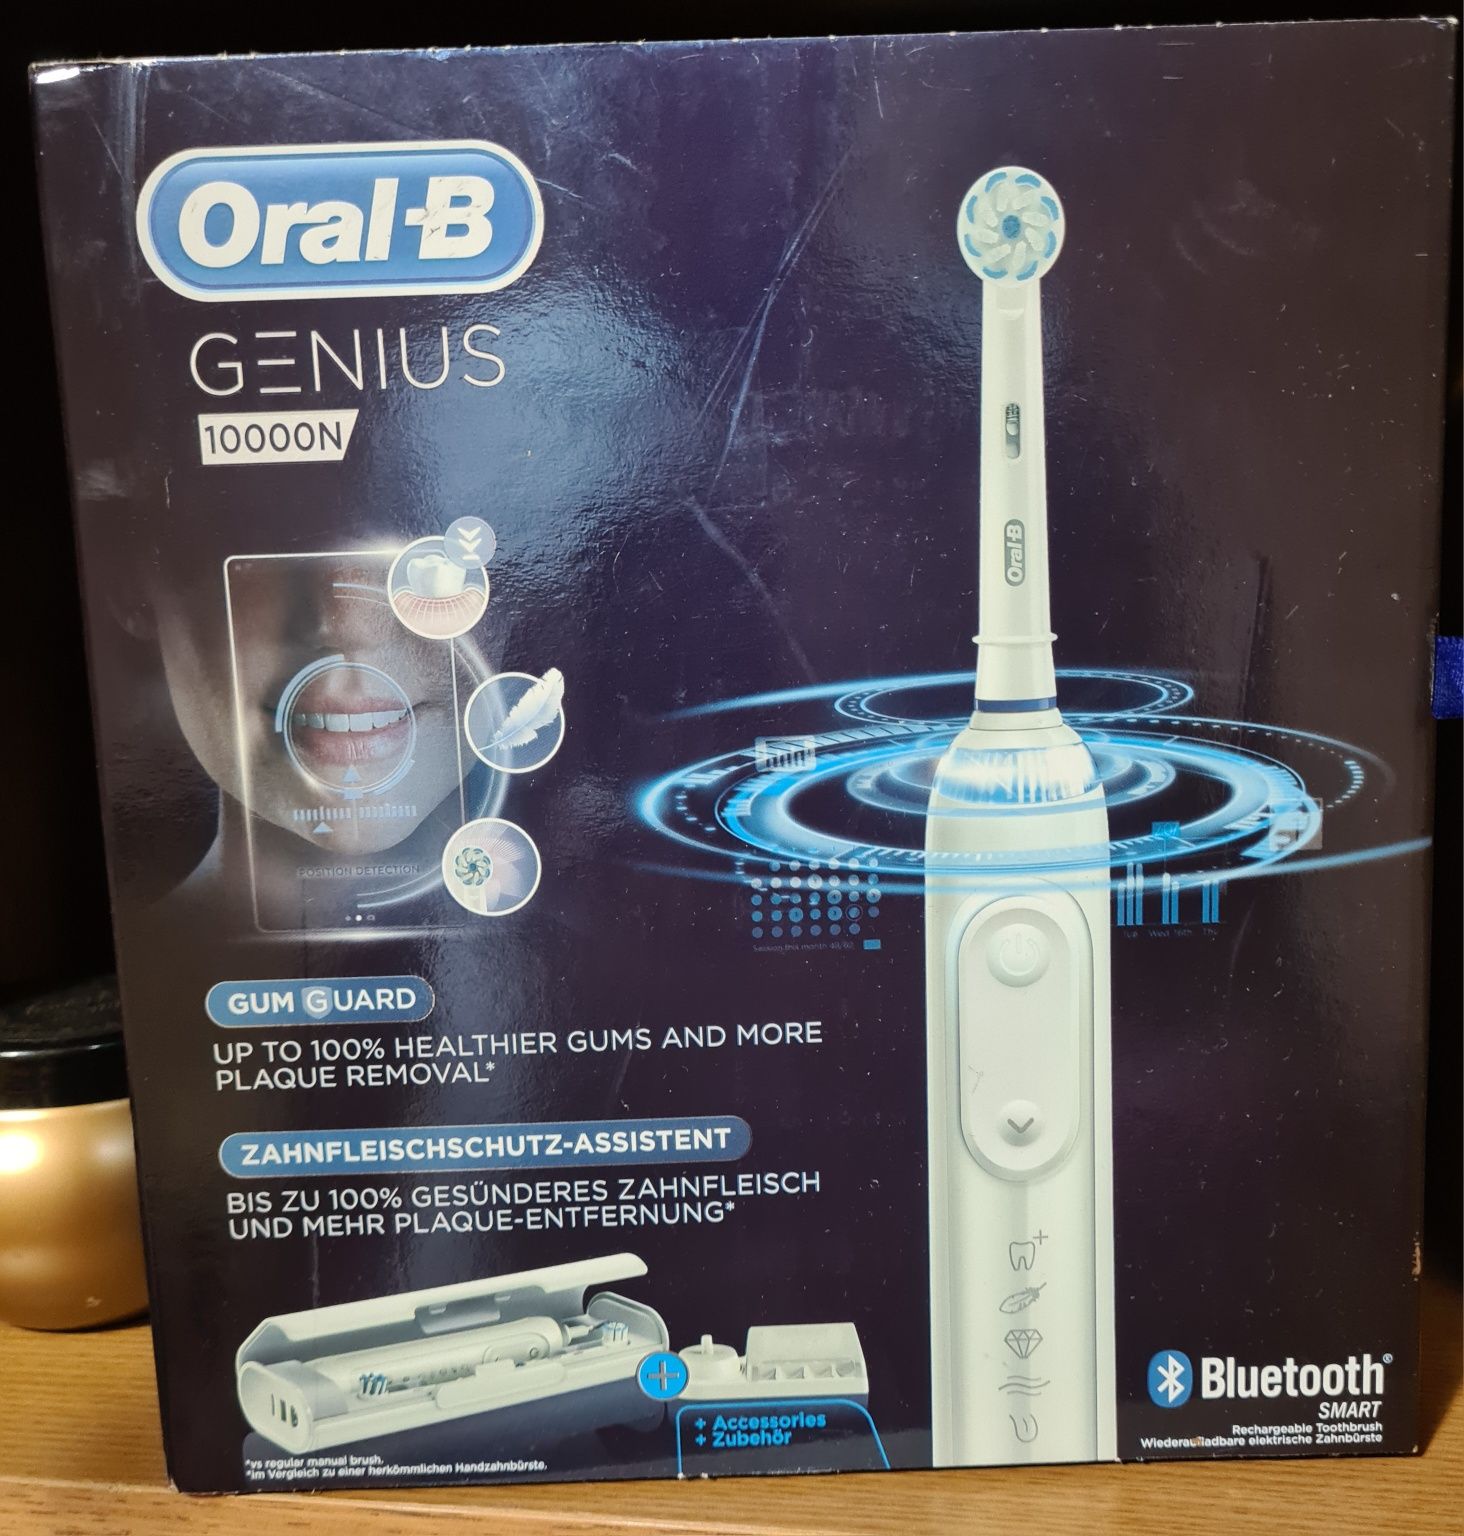 Oral-B Genius 10000n